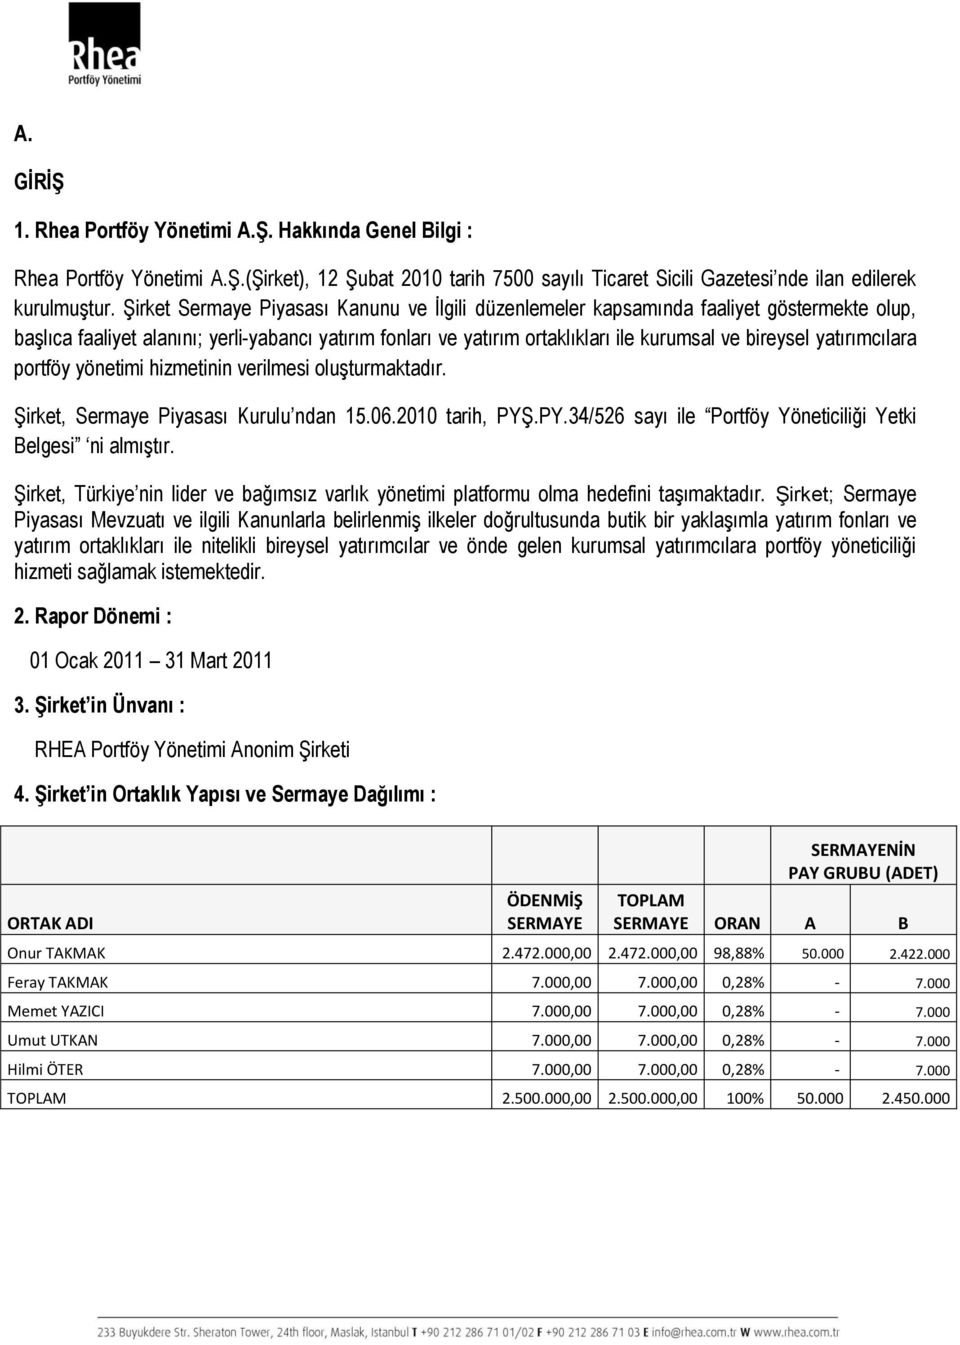 yatırımcılara portföy yönetimi hizmetinin verilmesi oluşturmaktadır. Şirket, Sermaye Piyasası Kurulu ndan 15.06.2010 tarih, PYŞ.PY.34/526 sayı ile Portföy Yöneticiliği Yetki Belgesi ni almıştır.